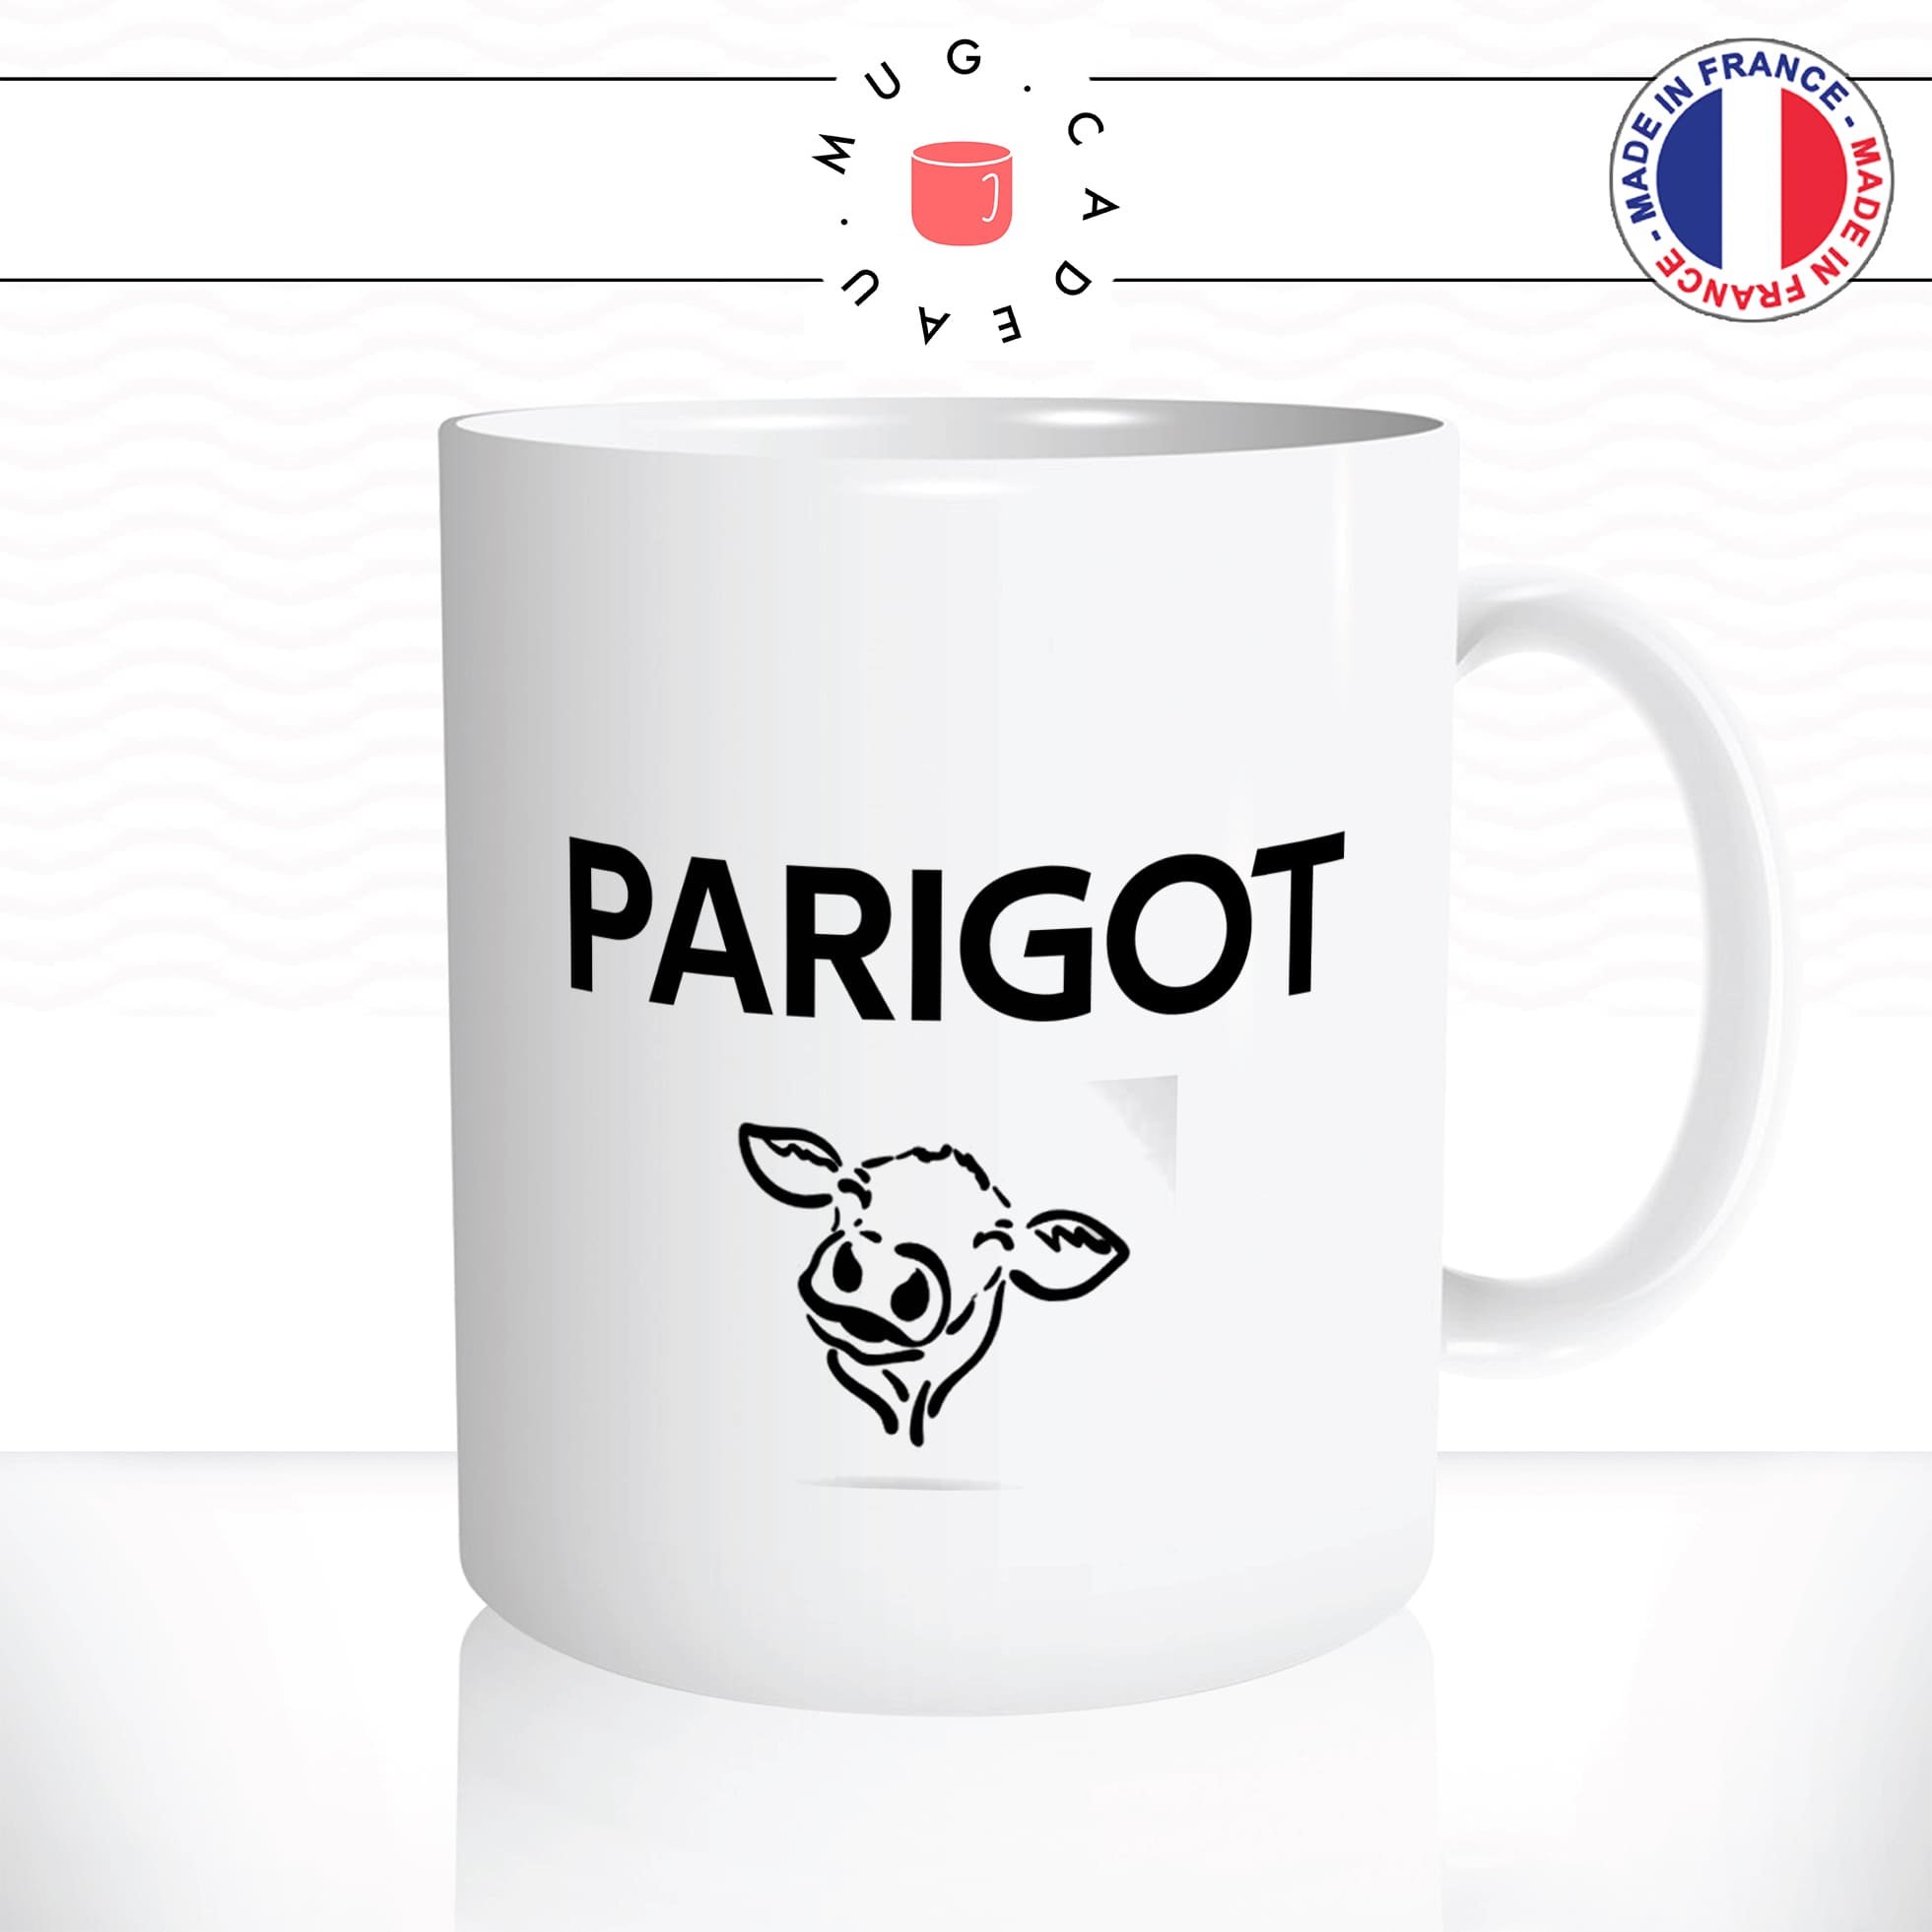 mug-tasse-blanc-brillant-parisien-tete-de-chien-parigot-tete-de-veau-citation-paris-francais-france-humour-idée-cadeau-originale-fun-unique2